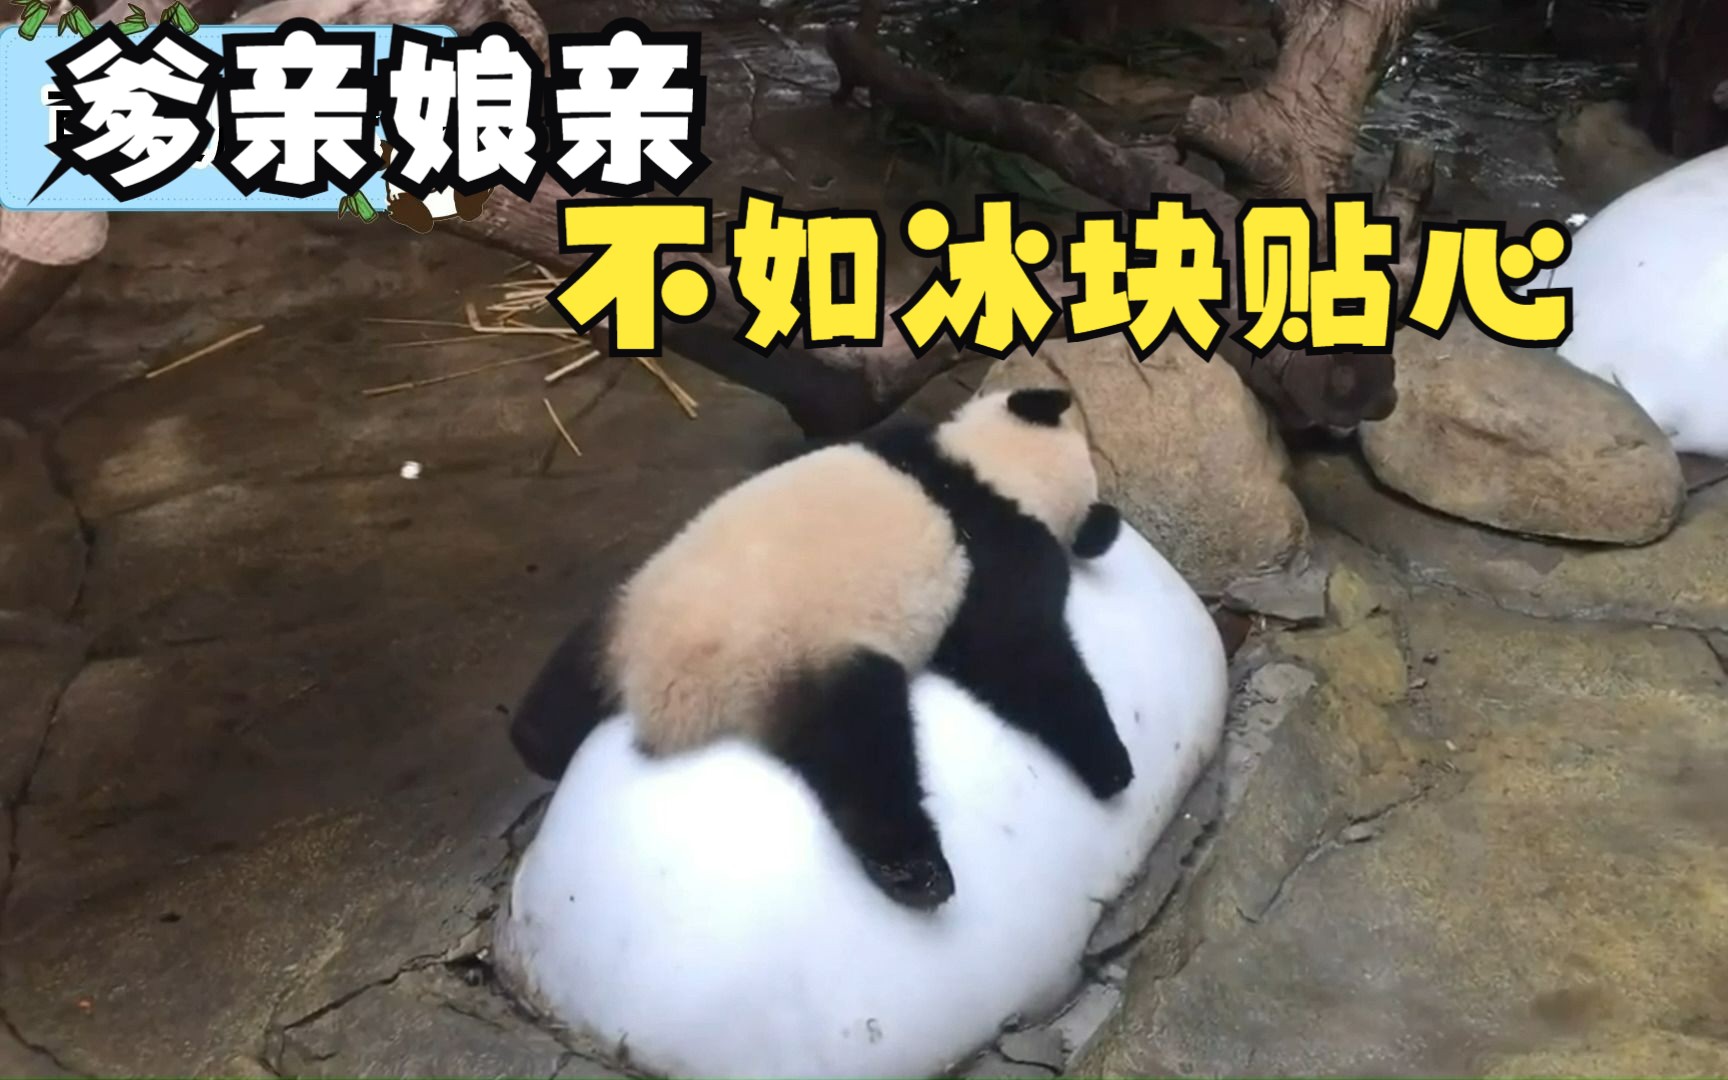 在冰块的诱惑面前，大熊猫们经受着残酷的熊性考验！